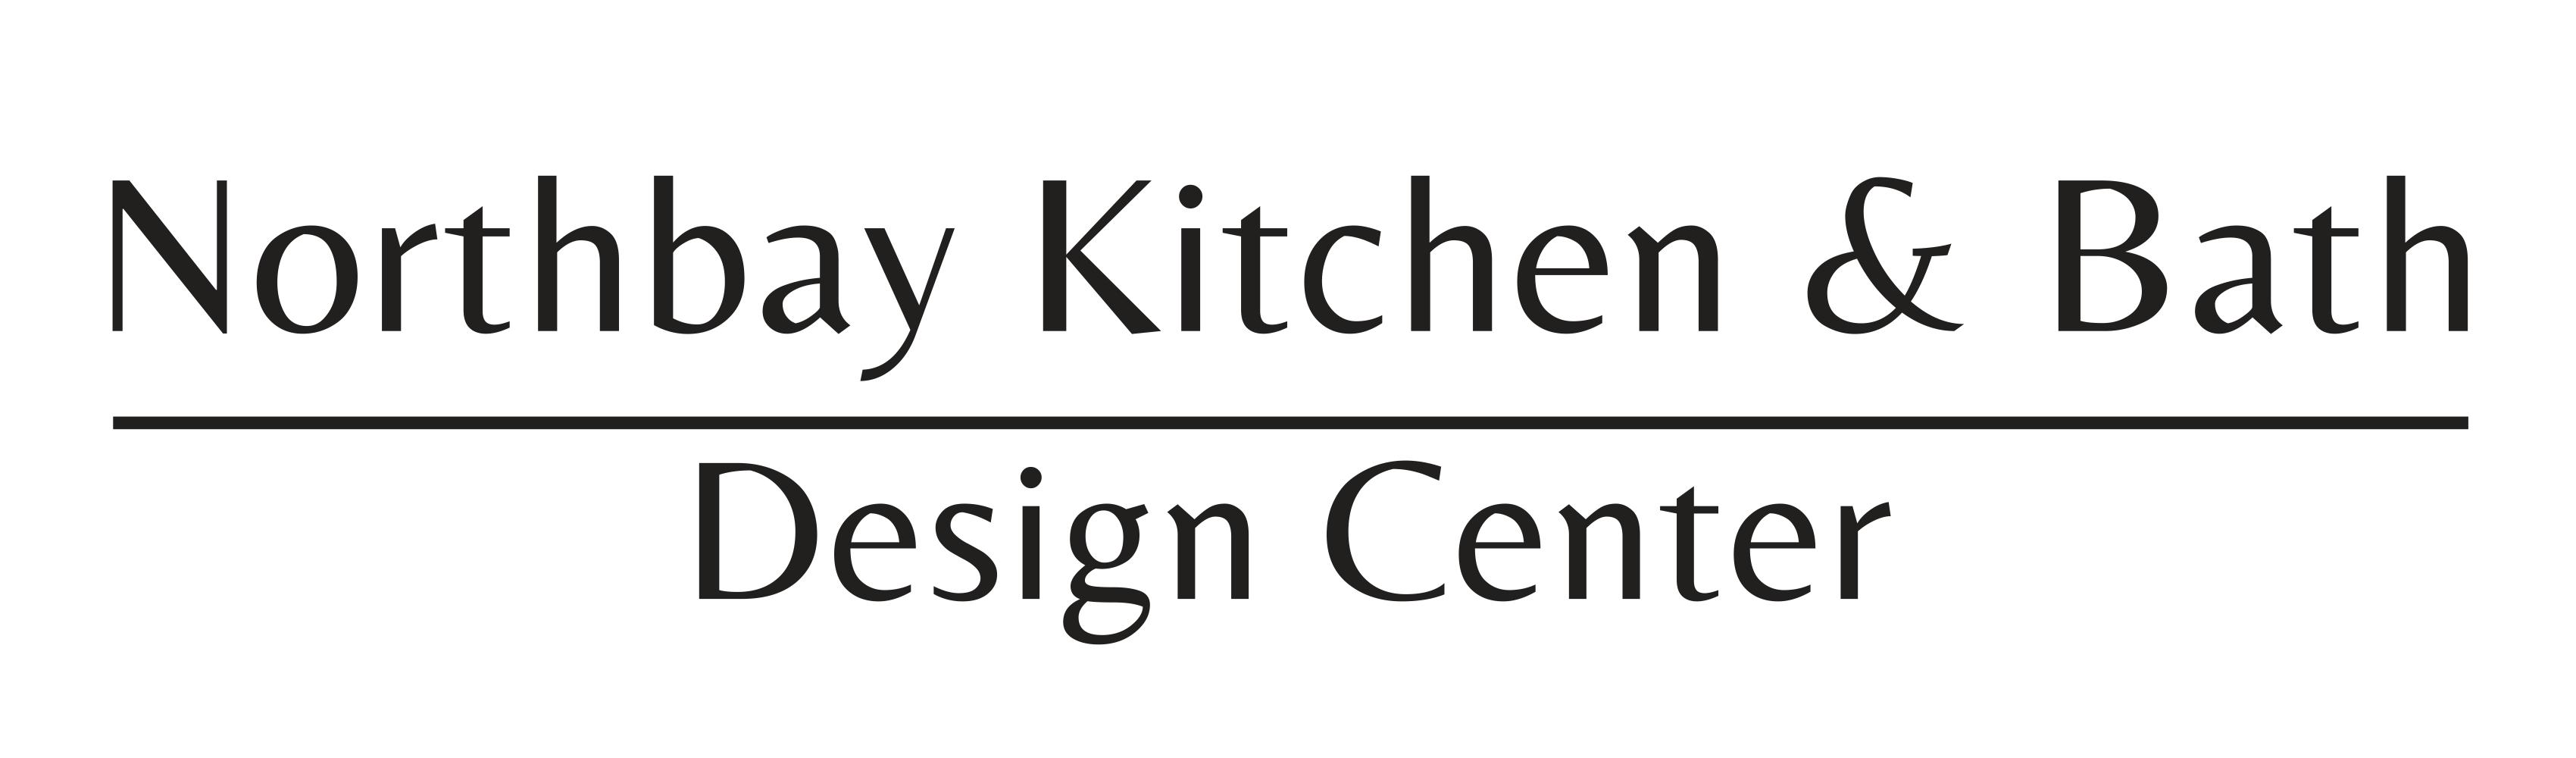 Northbay Kitchen & Bath Design Center 